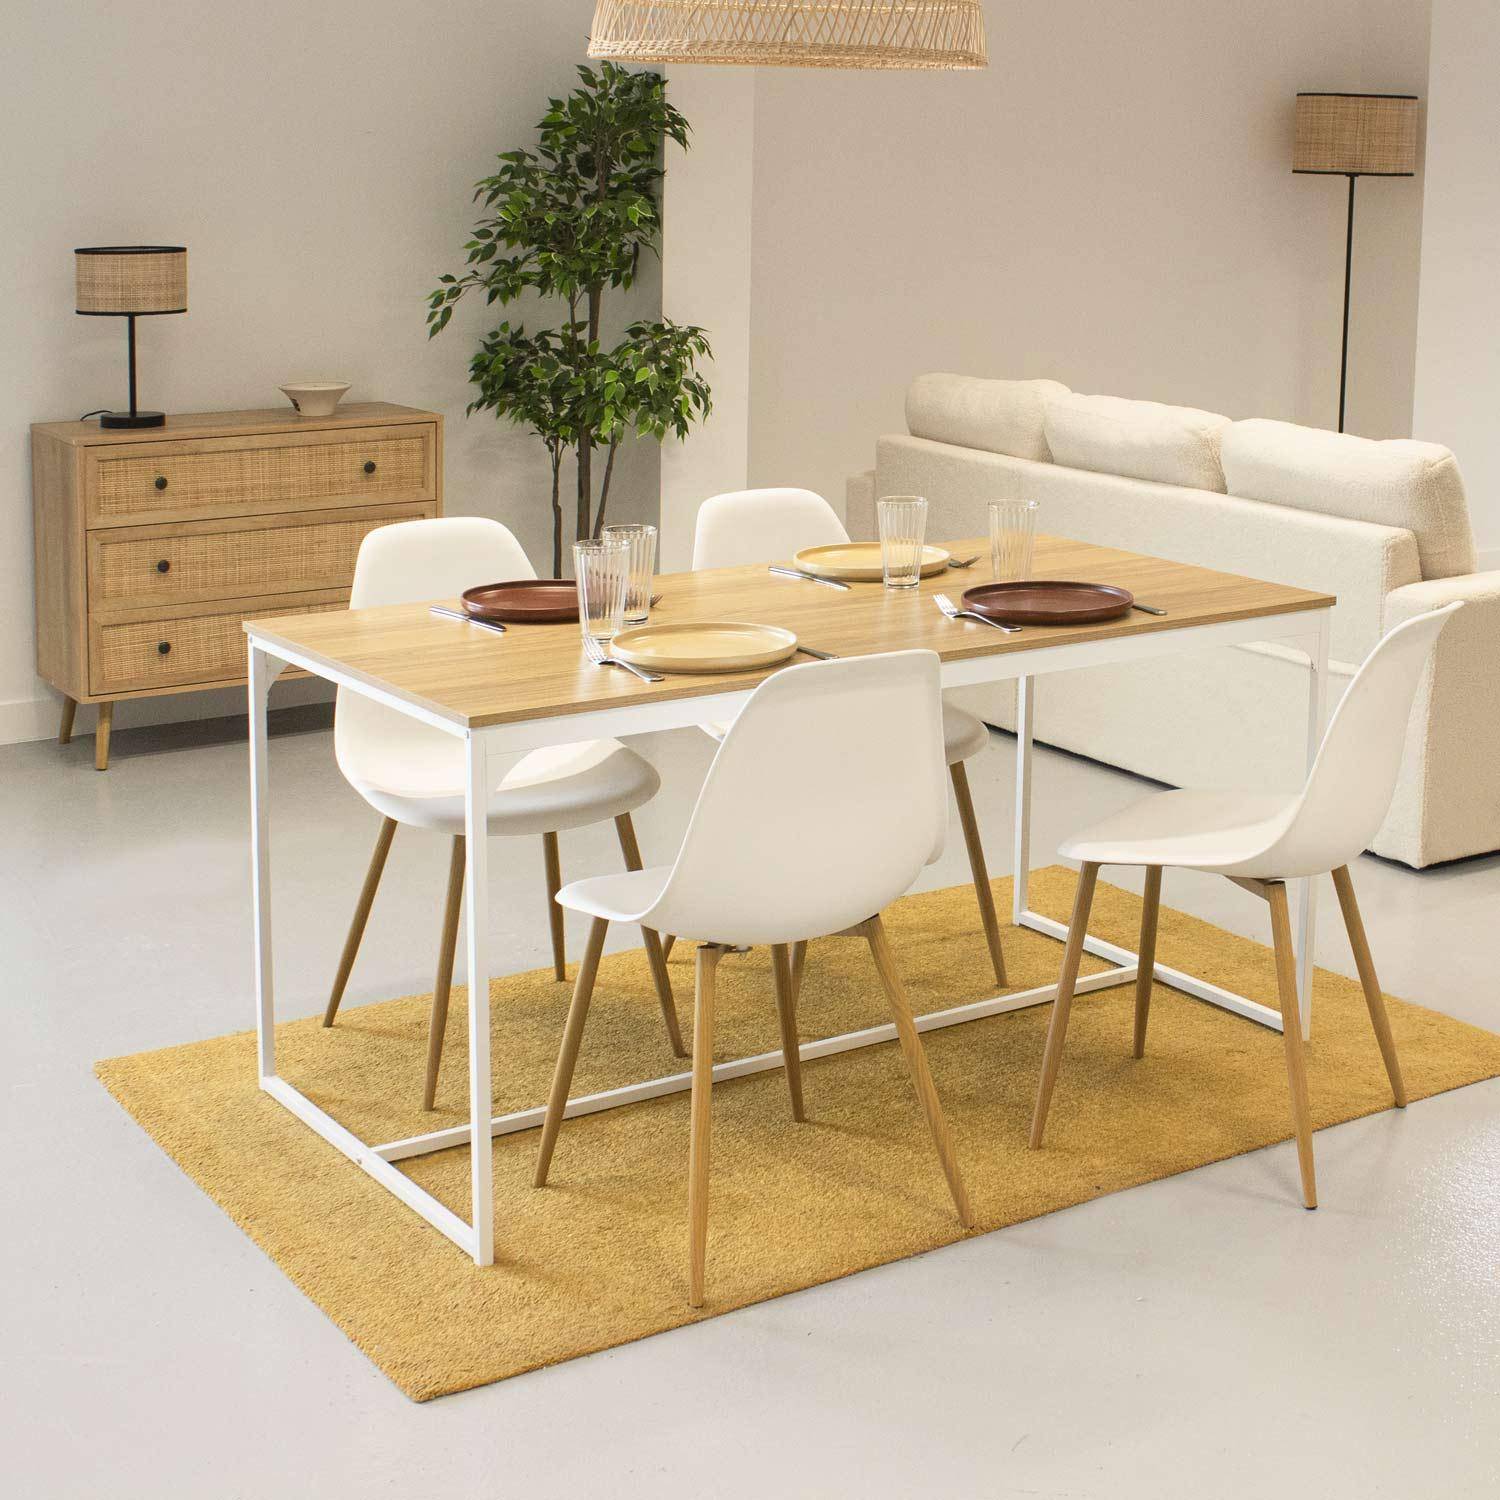 Rechthoekige eettafel wit metaal 150cm + 4 eetkamerstoelen stoelen, houtkleurige metalen poten, witte zitting,sweeek,Photo1